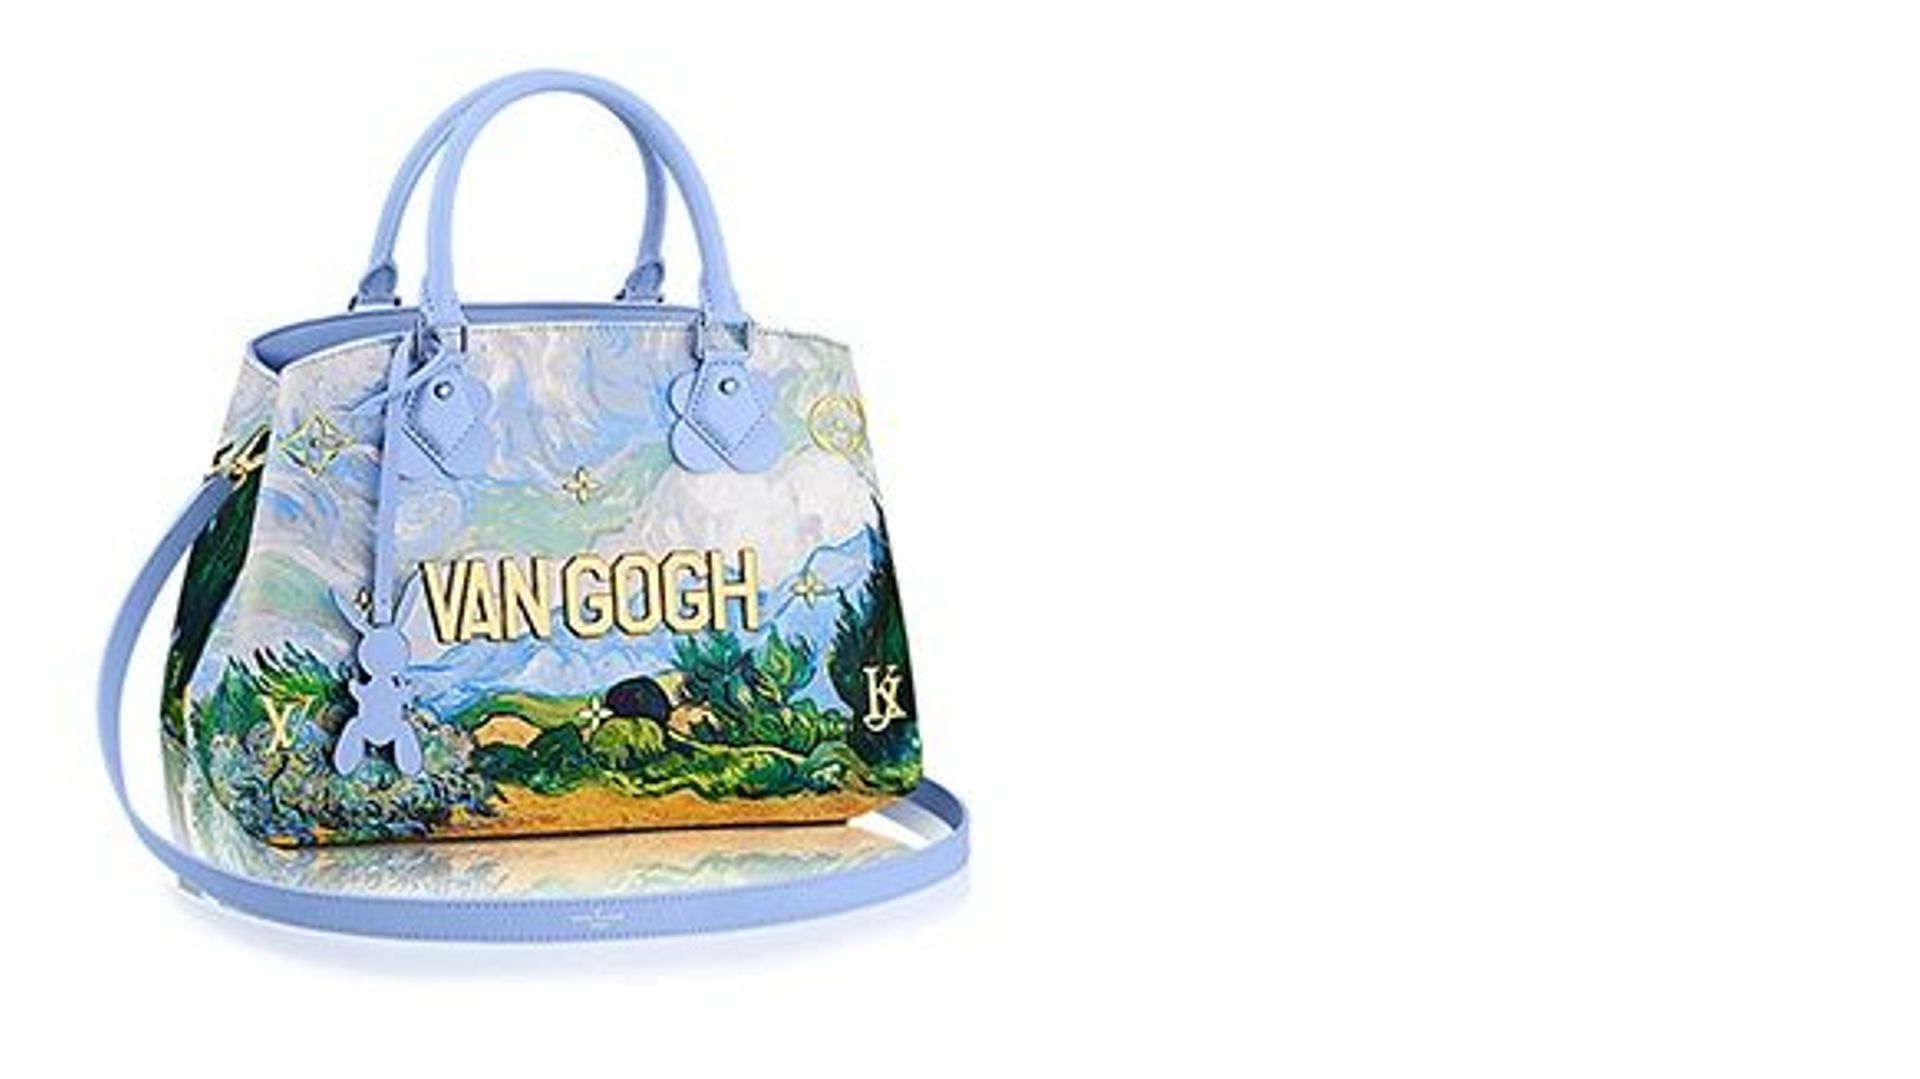 Jeff Koons's Van Gogh bag for Louis Vuitton. Image courtesy Louis Vuitton.   Louis vuitton bag, Louis vuitton handbags, Louis vuitton handbags  neverfull